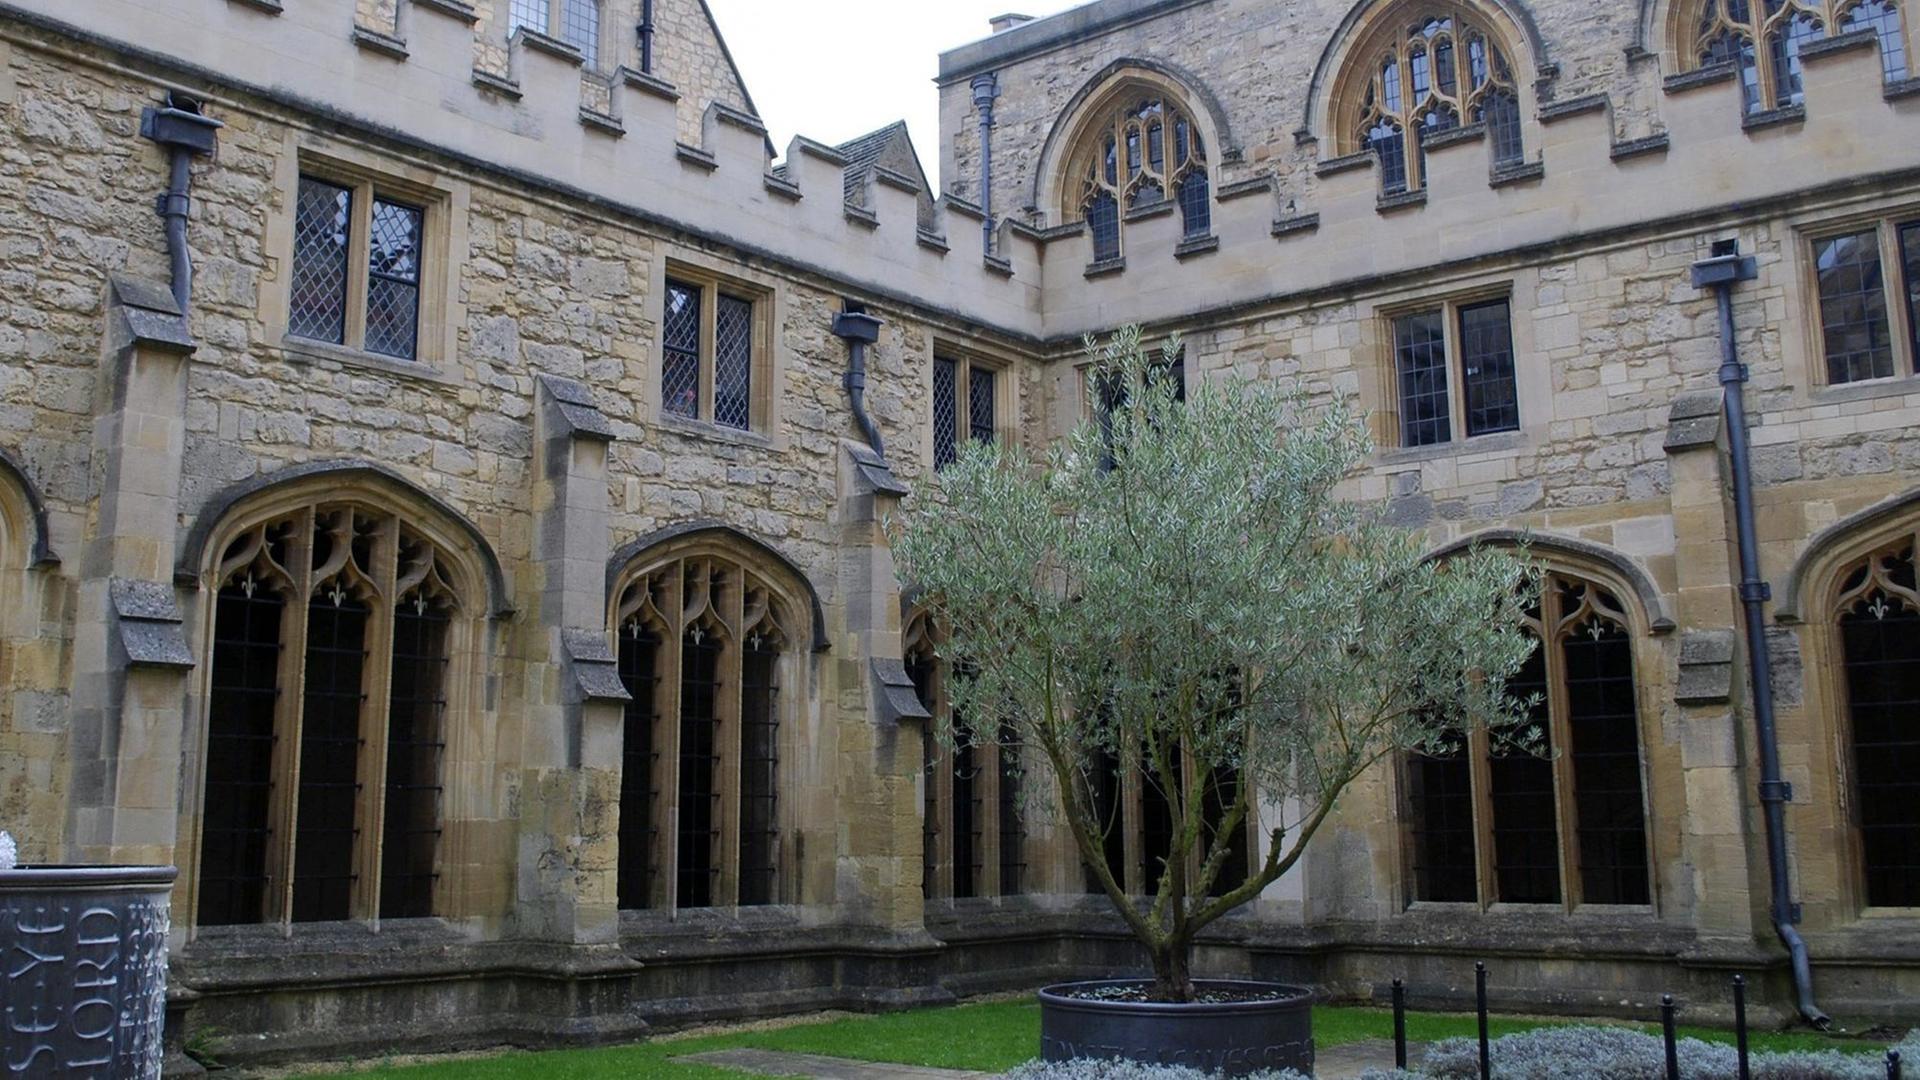 Das Christ Church College ist eines der größten der britischen Universität Oxford. Hier wurden Teile der Harry Potter-Filme gedreht.